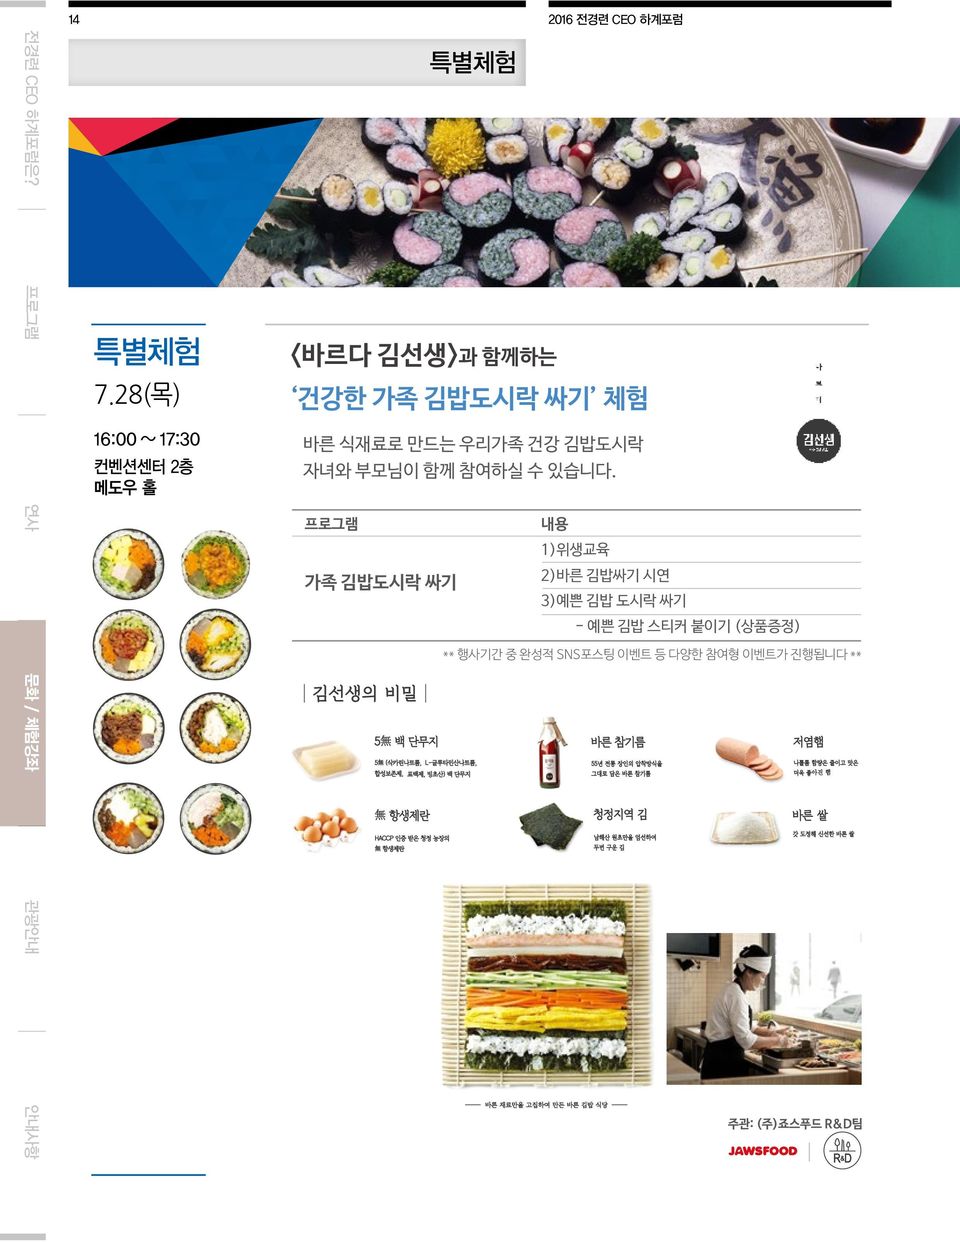 부모님이 가족 김밥도시락 함께 참여하실 싸기 수 체험 있습니다. 바른 식재료로 만드는 우리가족 건강 김밥도시락 자녀와 프로그램부모님이 함께 참여하실 수 있습니다.